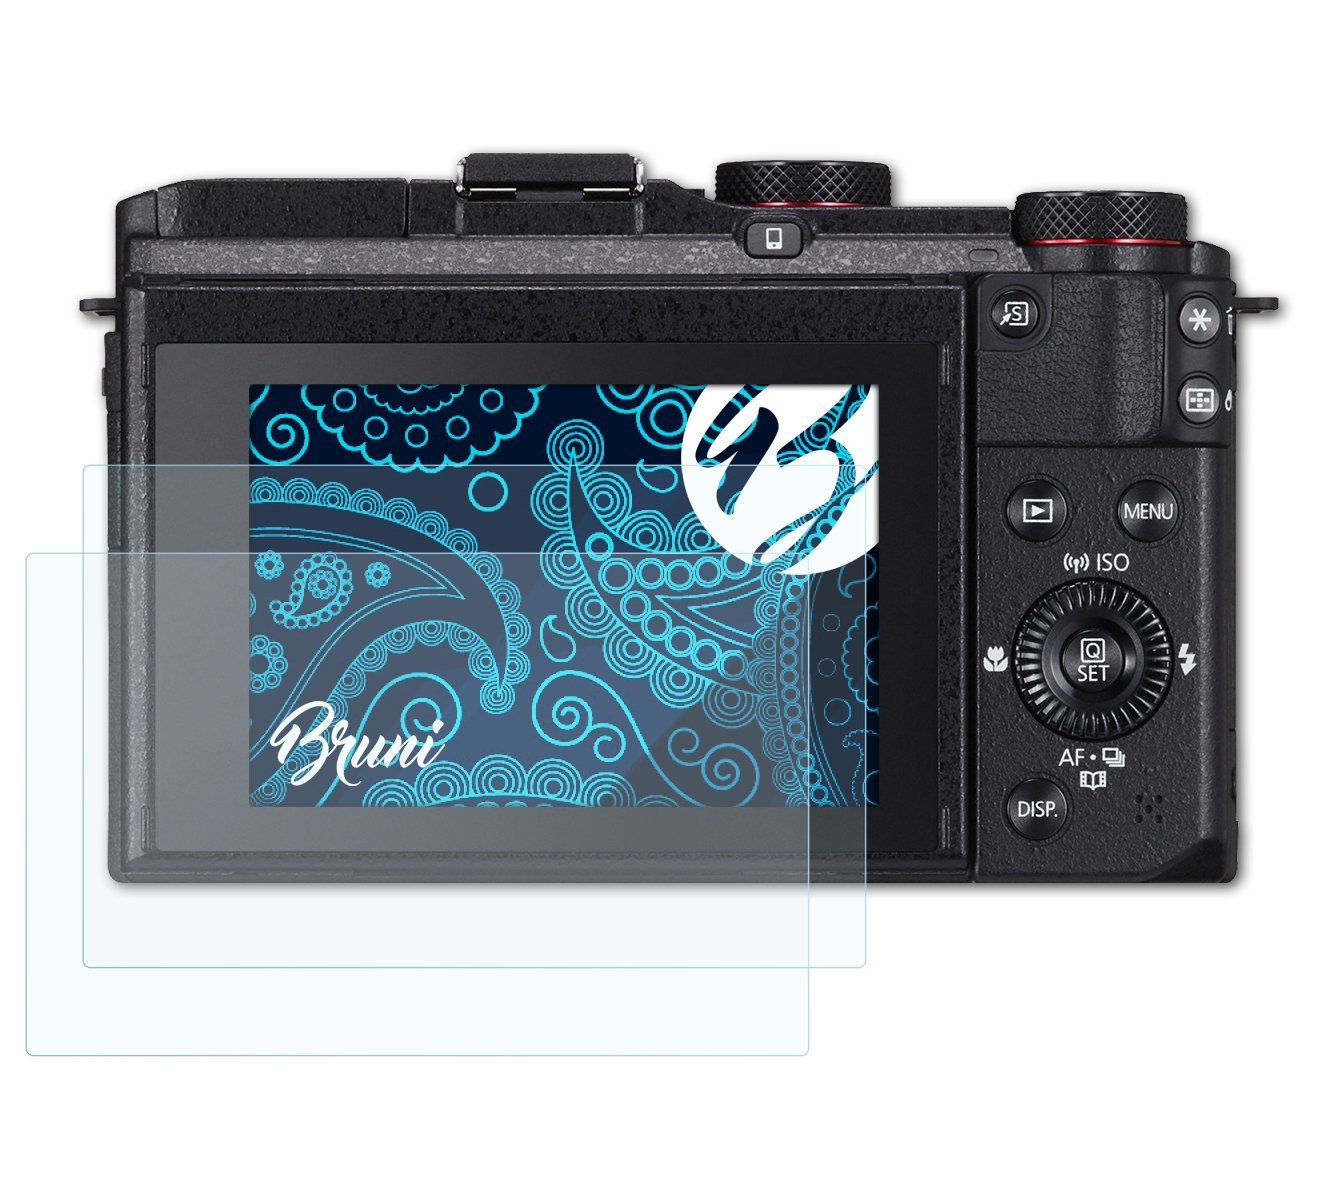 X) Canon PowerShot Basics-Clear BRUNI 2x G3 Schutzfolie(für